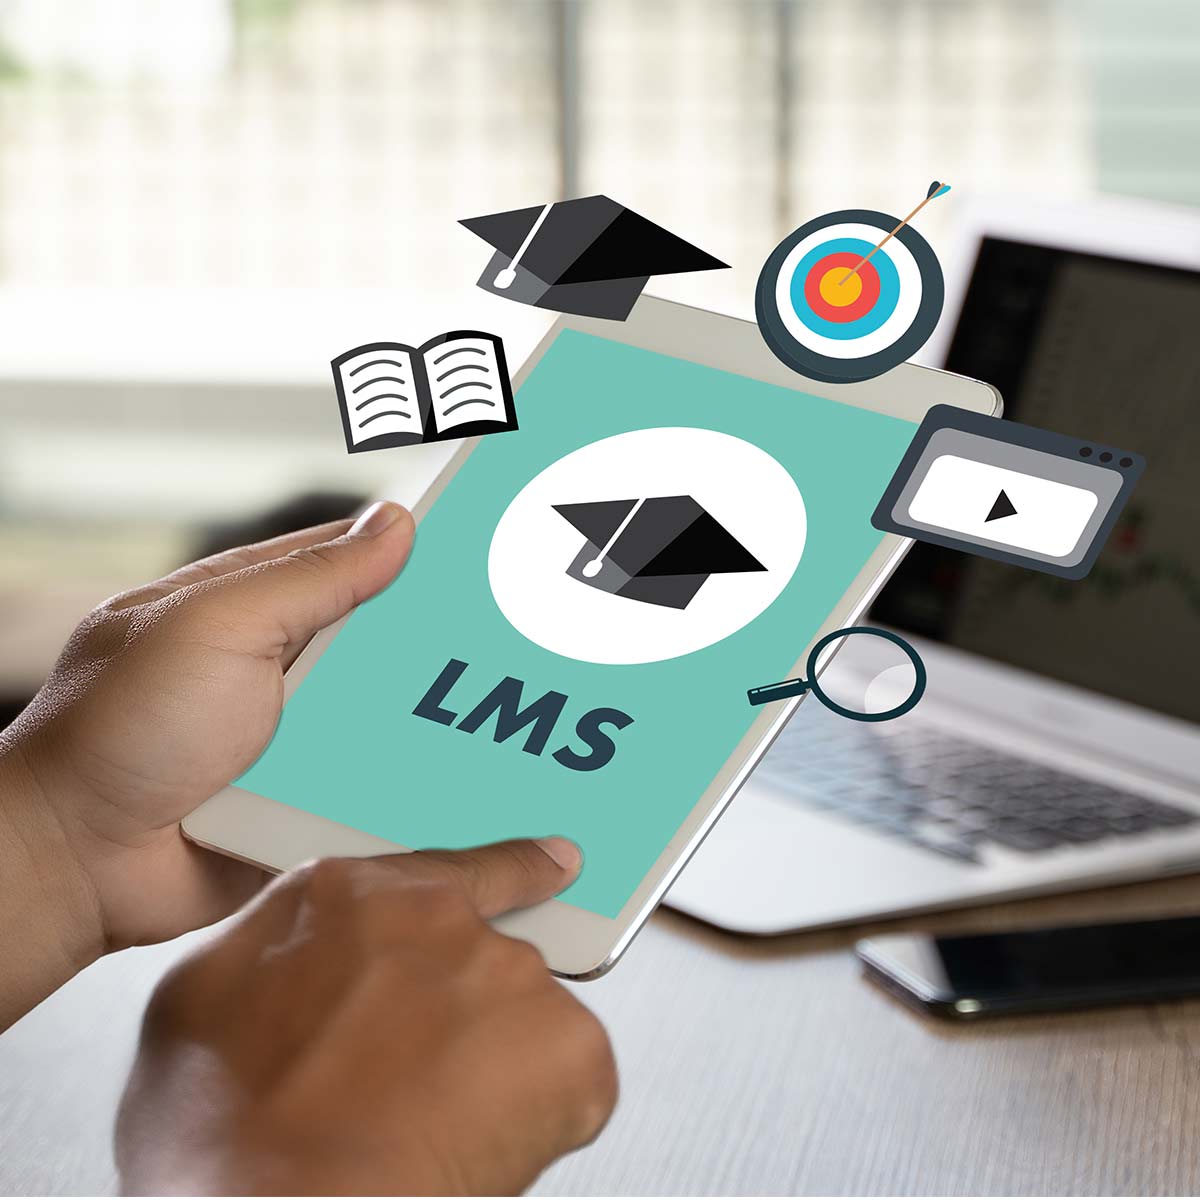 LMS management